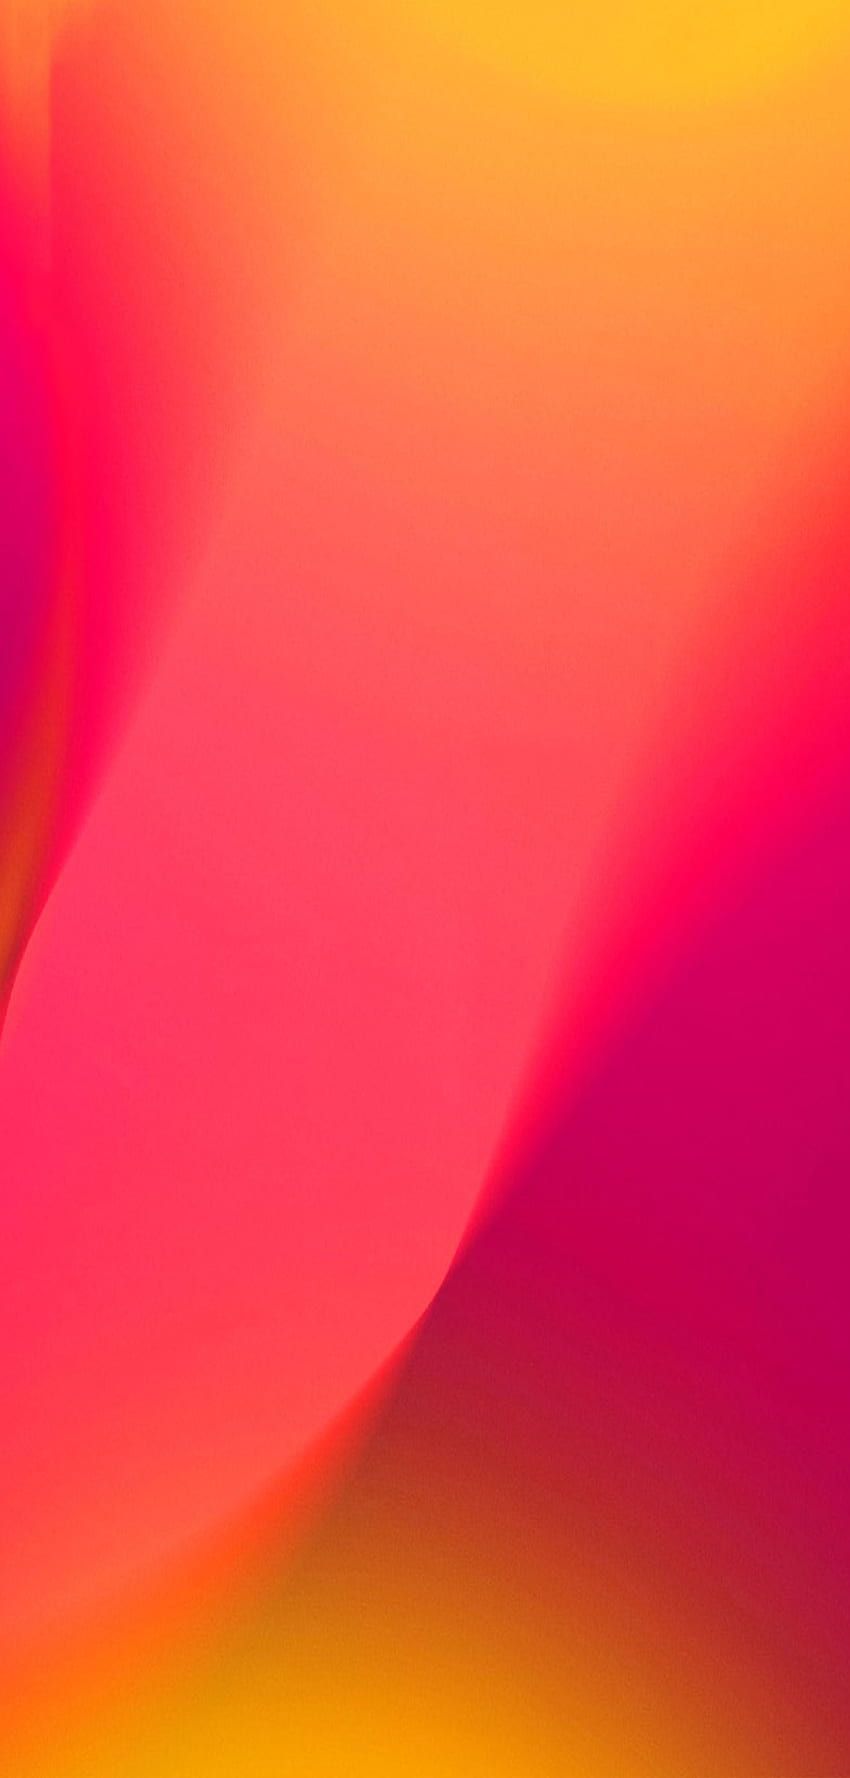 Bestes iPhone und Android: Hintergrund mit lebendigen Formen und Farbverläufen für iPhone und Buntes iPhone, iPhone-Himmel, rosafarbenes iPhone HD-Handy-Hintergrundbild